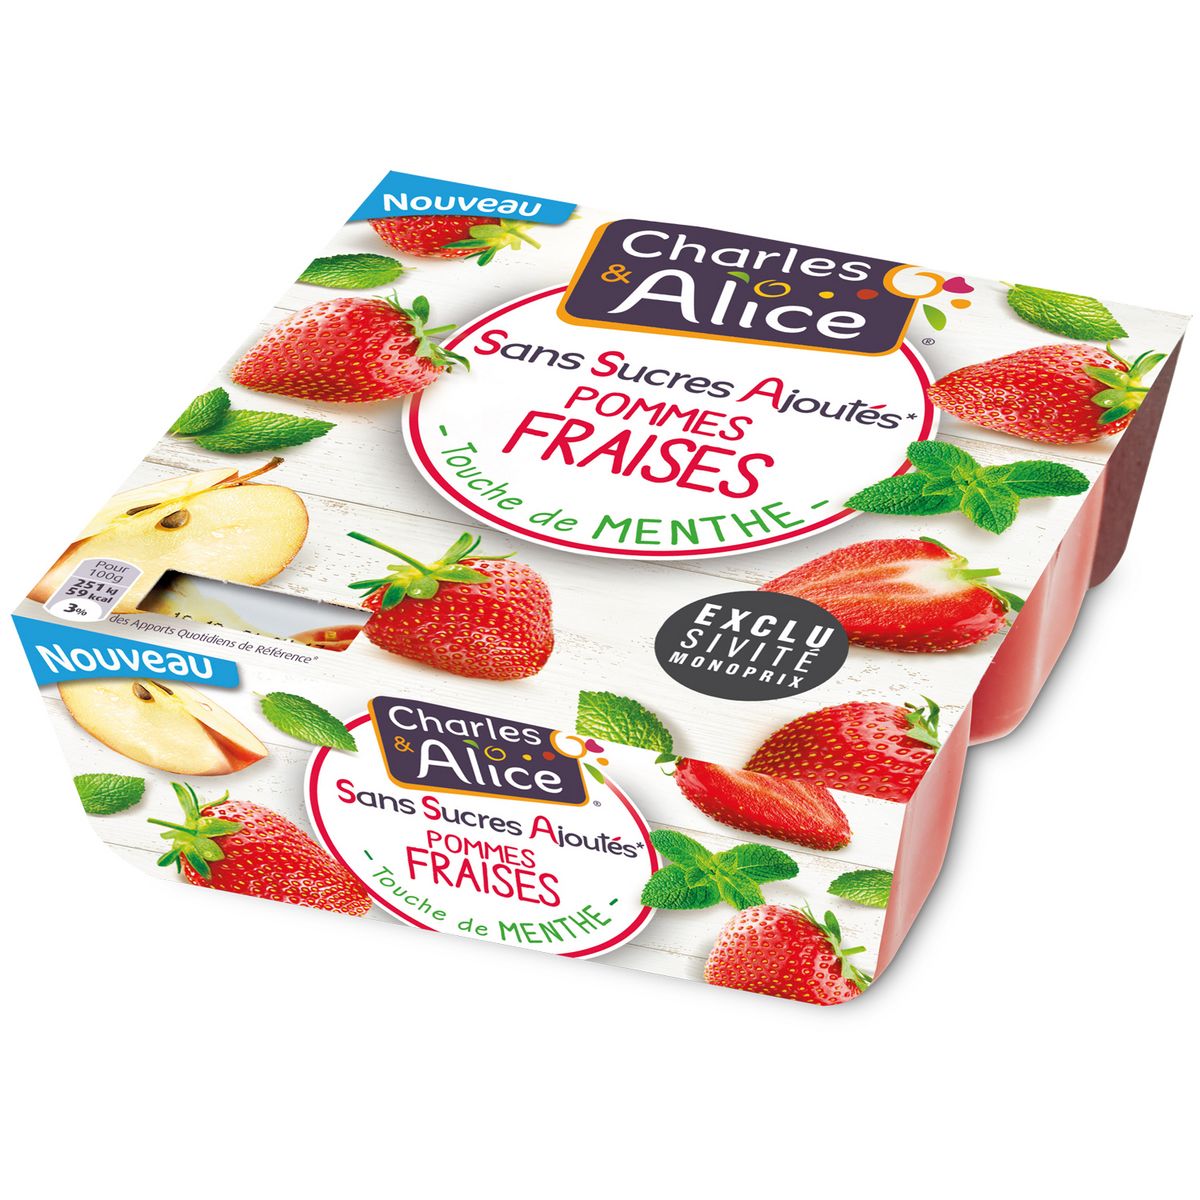 CHARLES & ALICE Dessert pomme fraise touche de menthe sans sucres ajoutés 4x97g